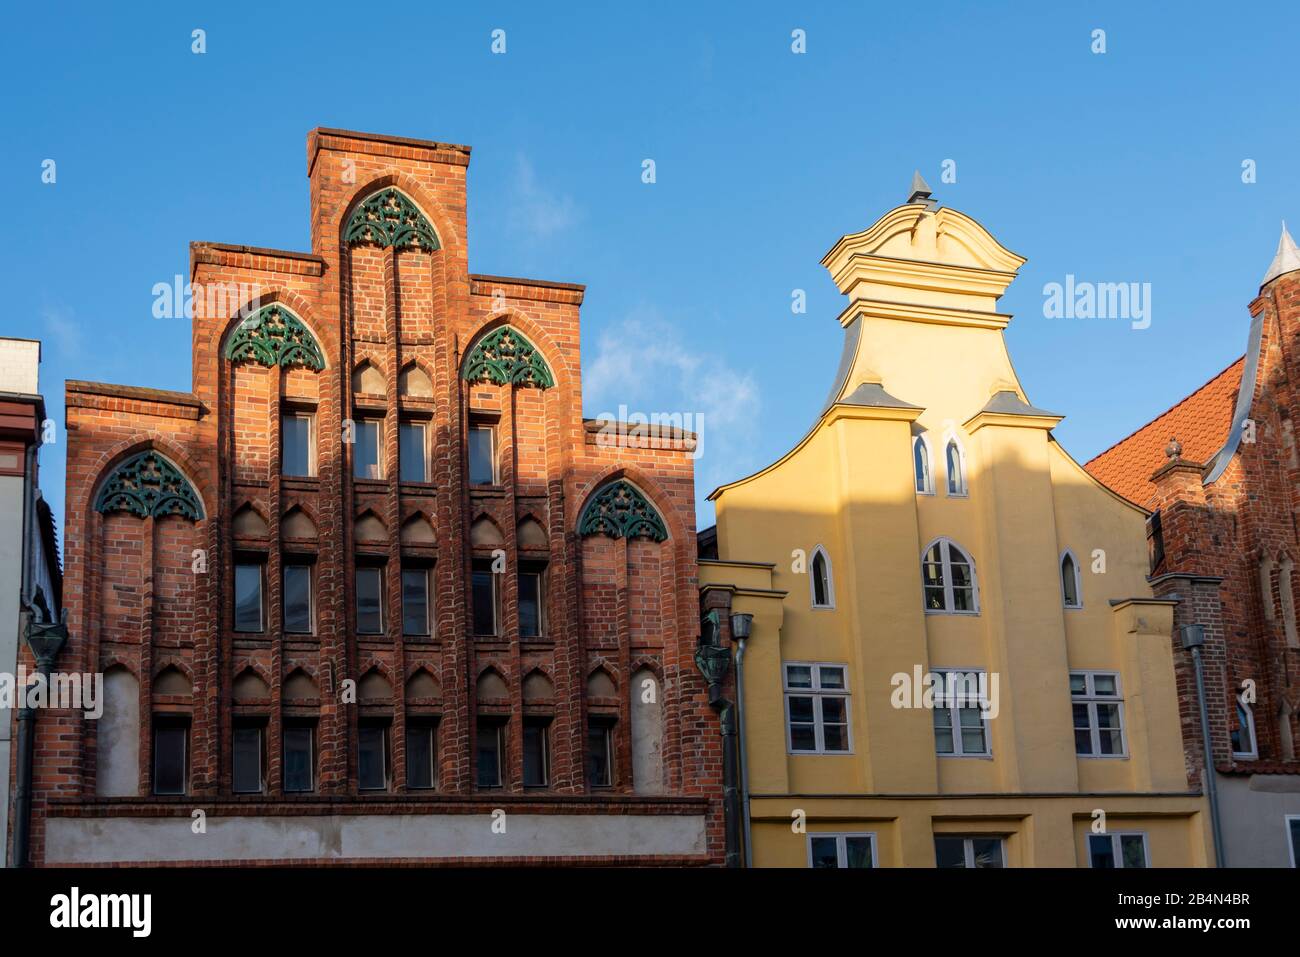 Deutschland, Mecklenburg-Vorpommern, Stralsund, Historisches Giebelhaus, Hansestadt Stralsund, Ostsee Foto Stock